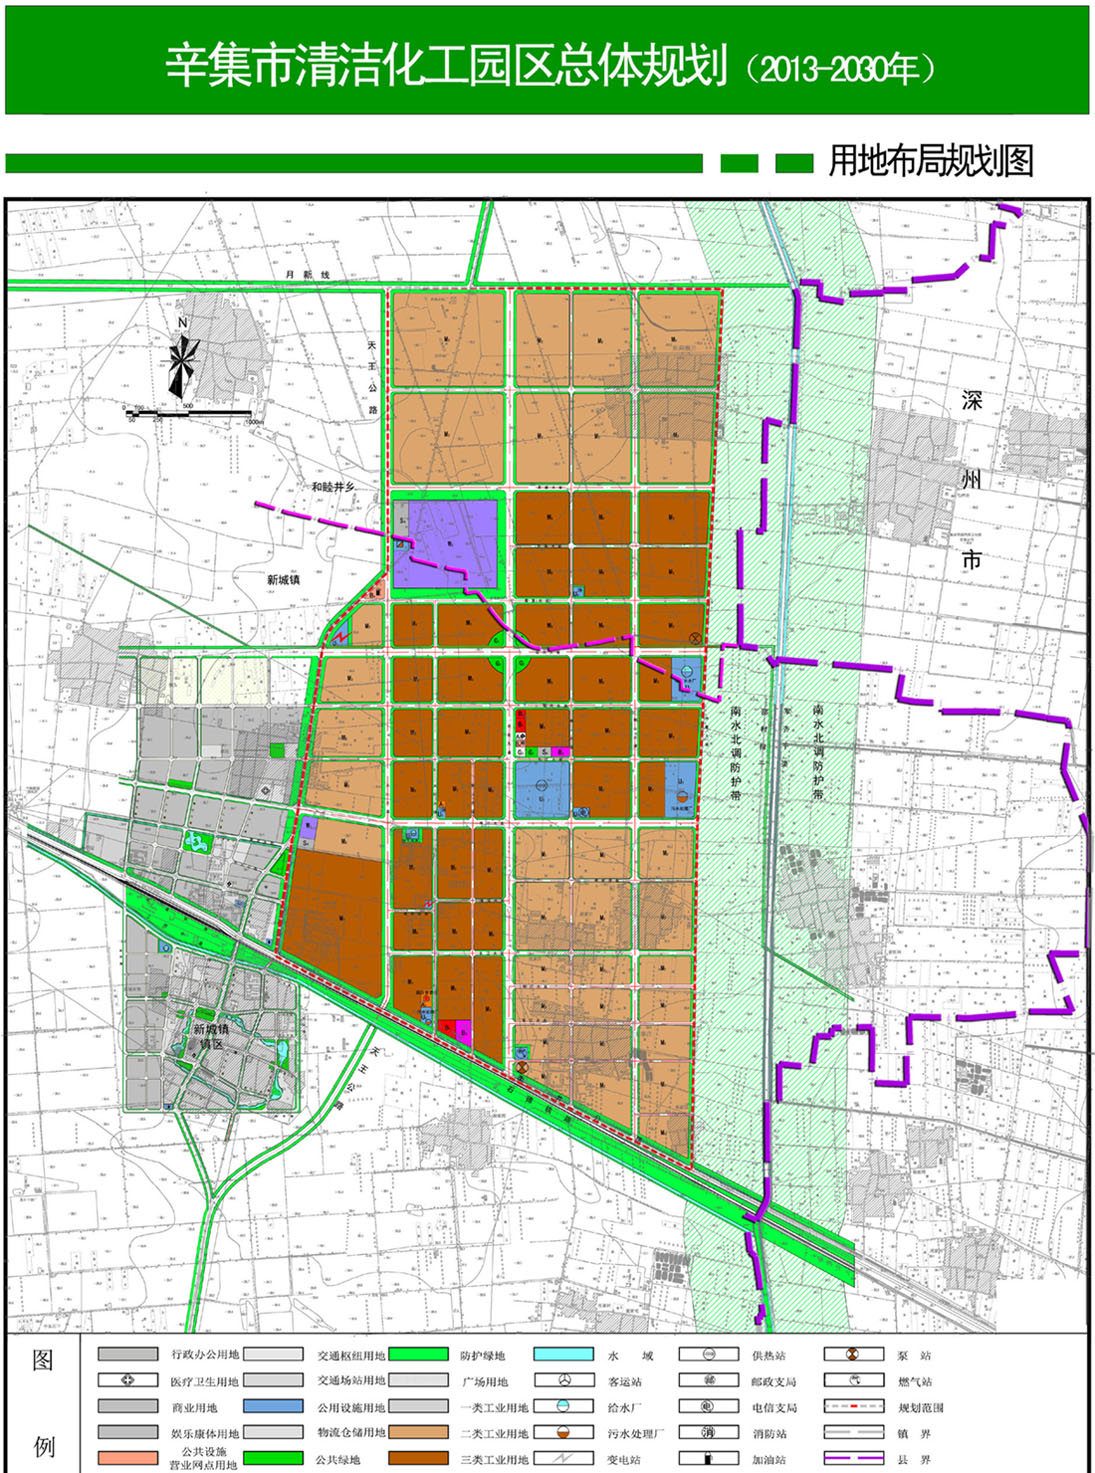 《辛集市清洁化工园区总体规划(2014-2030)(草图片